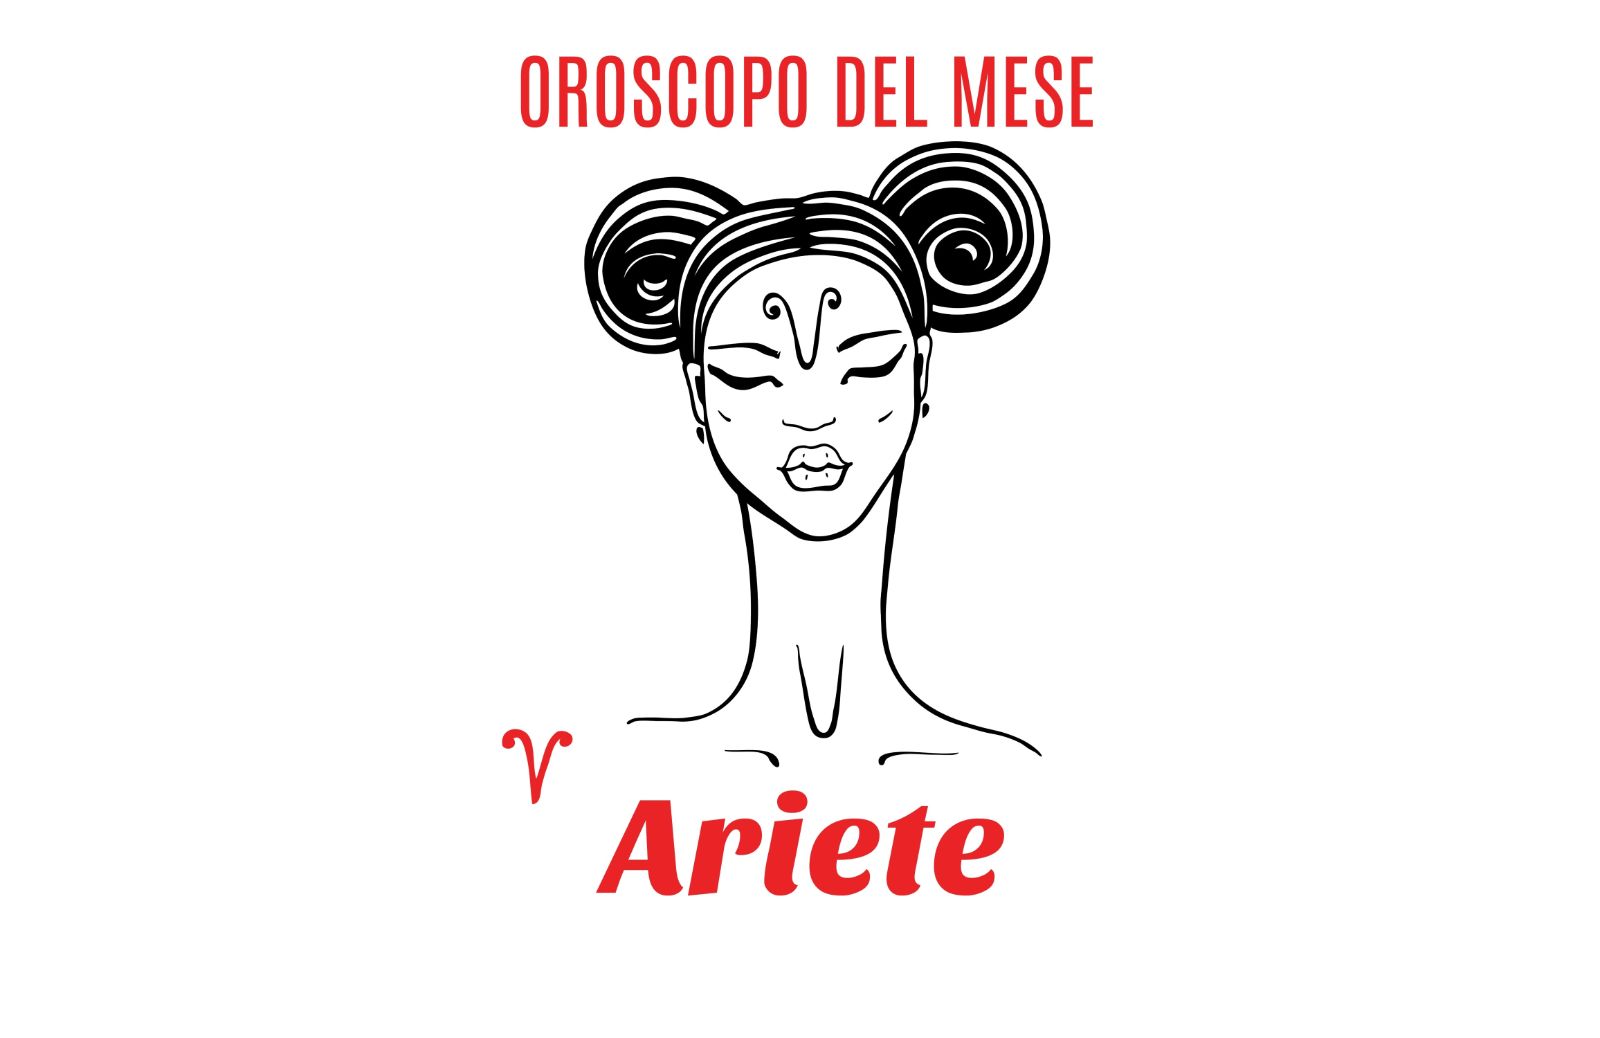 Oroscopo del mese: Ariete - febbraio 2019